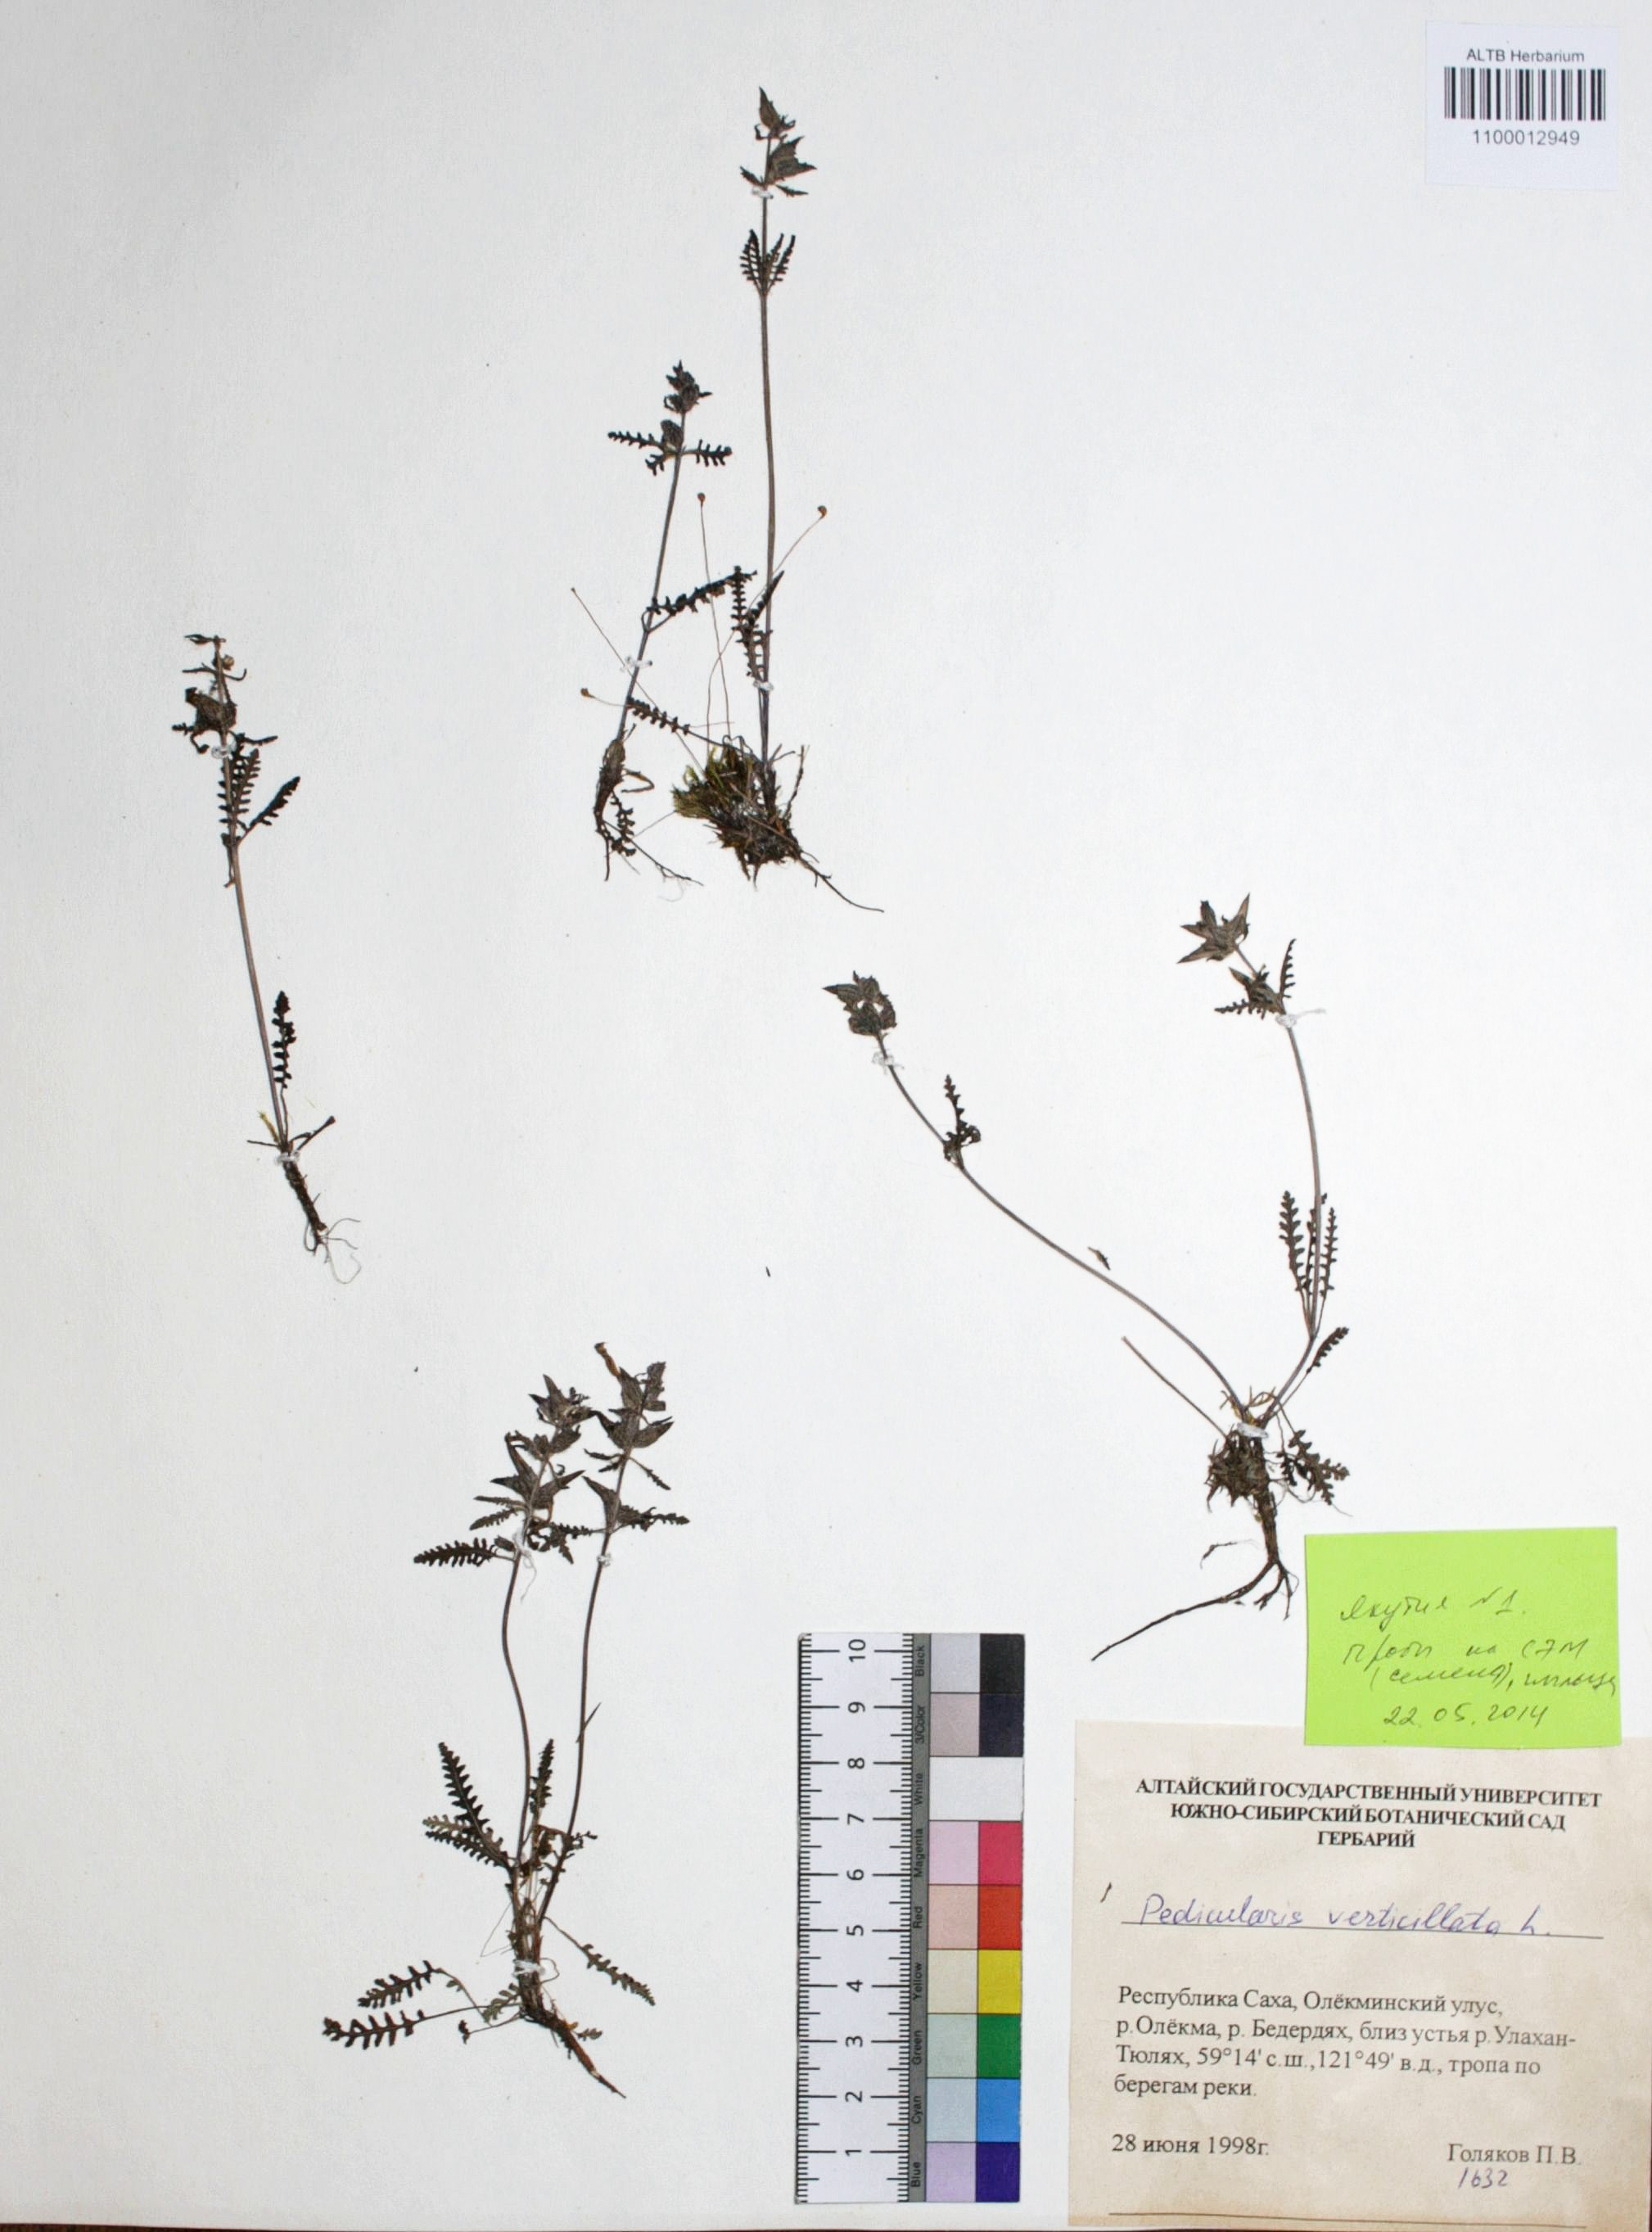 Pedicularis verticillata L.